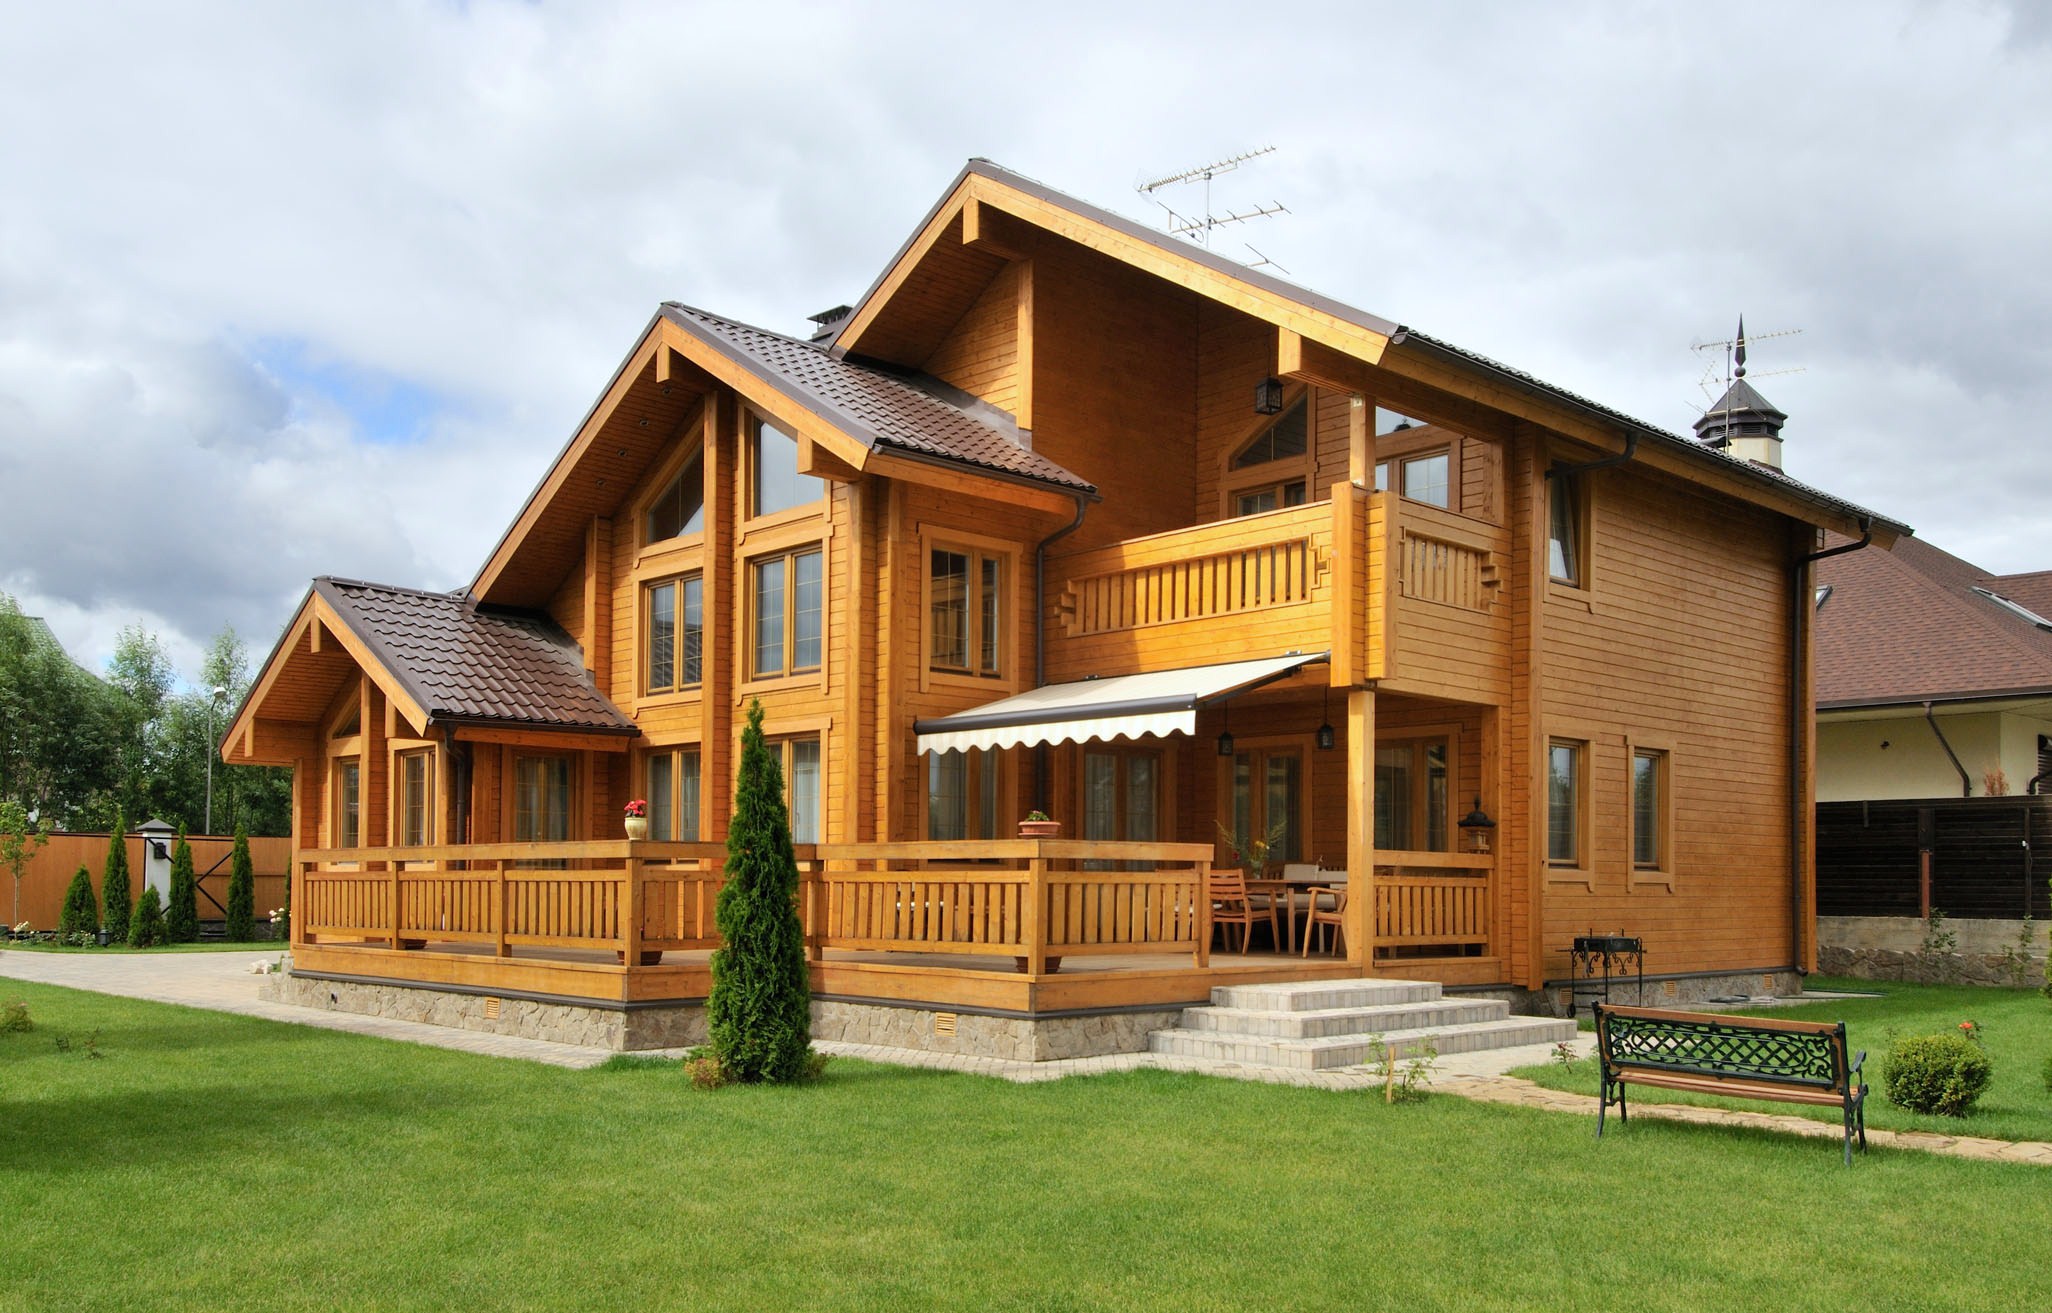 Casa de madeira - o custo de se construir